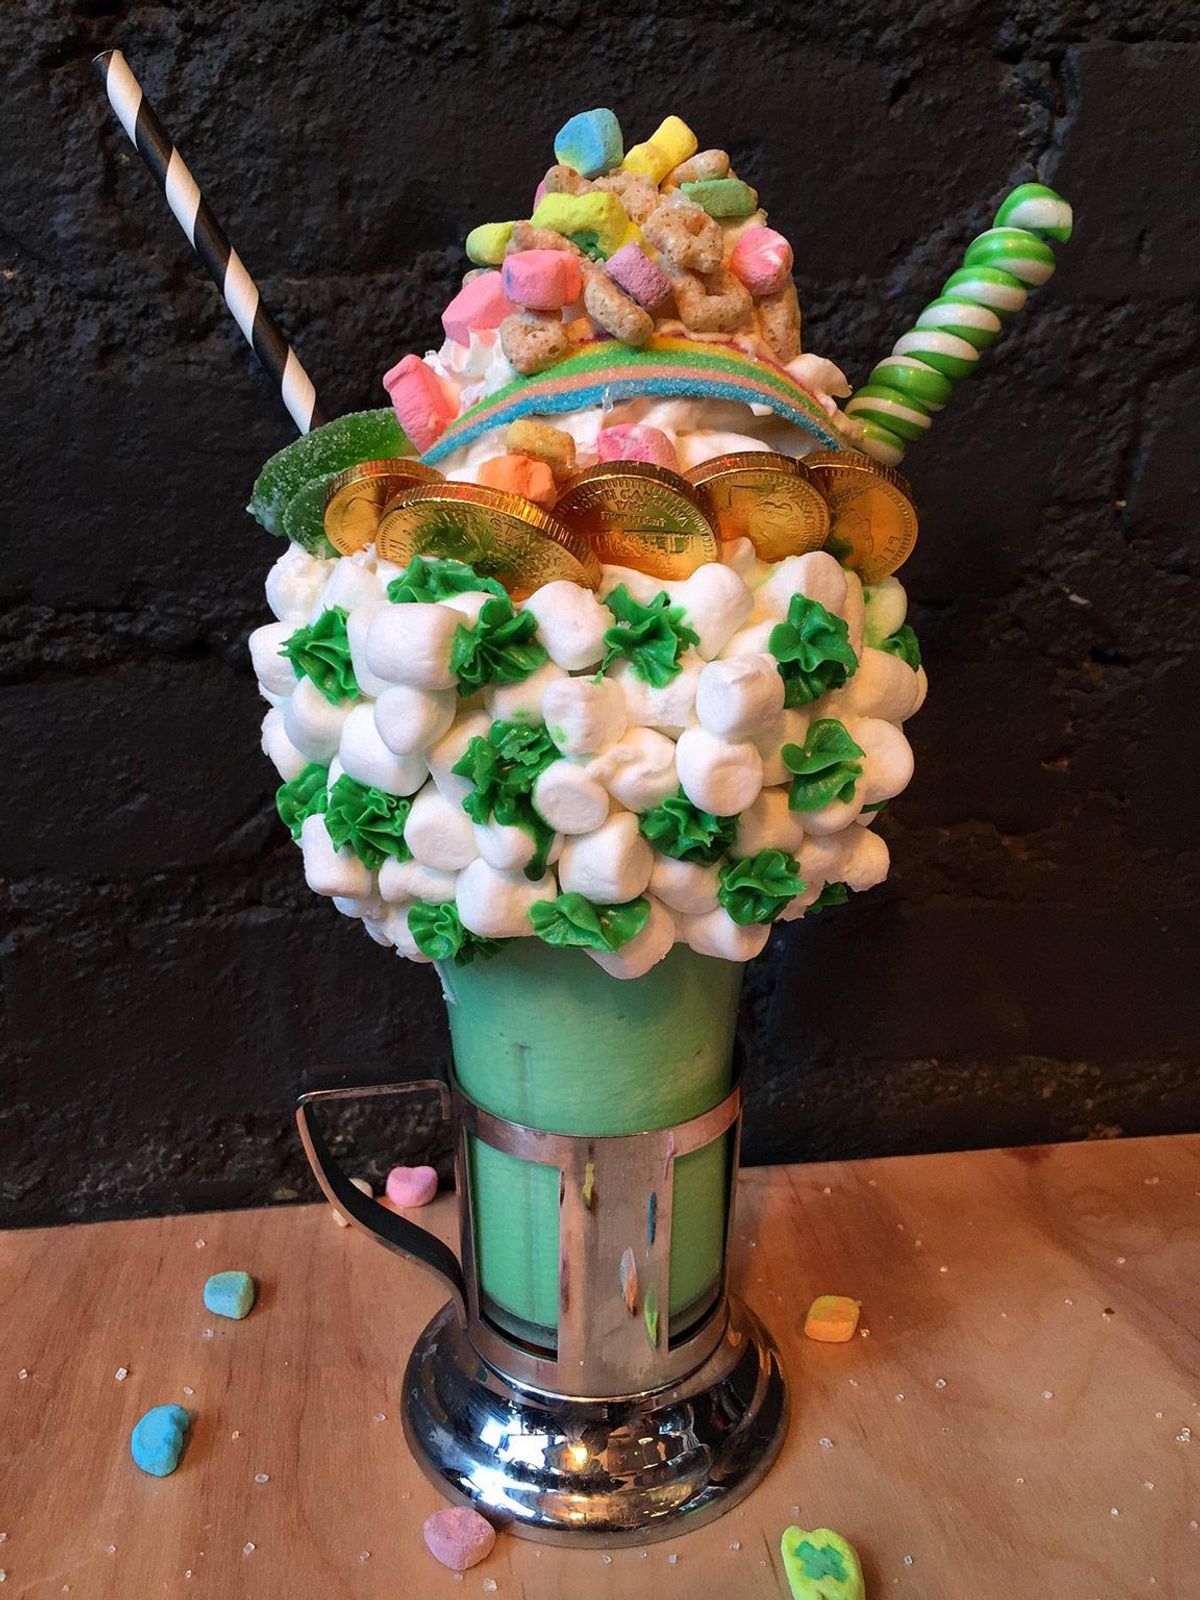 St Patrick's Day Milkshake from Black Tap NYC